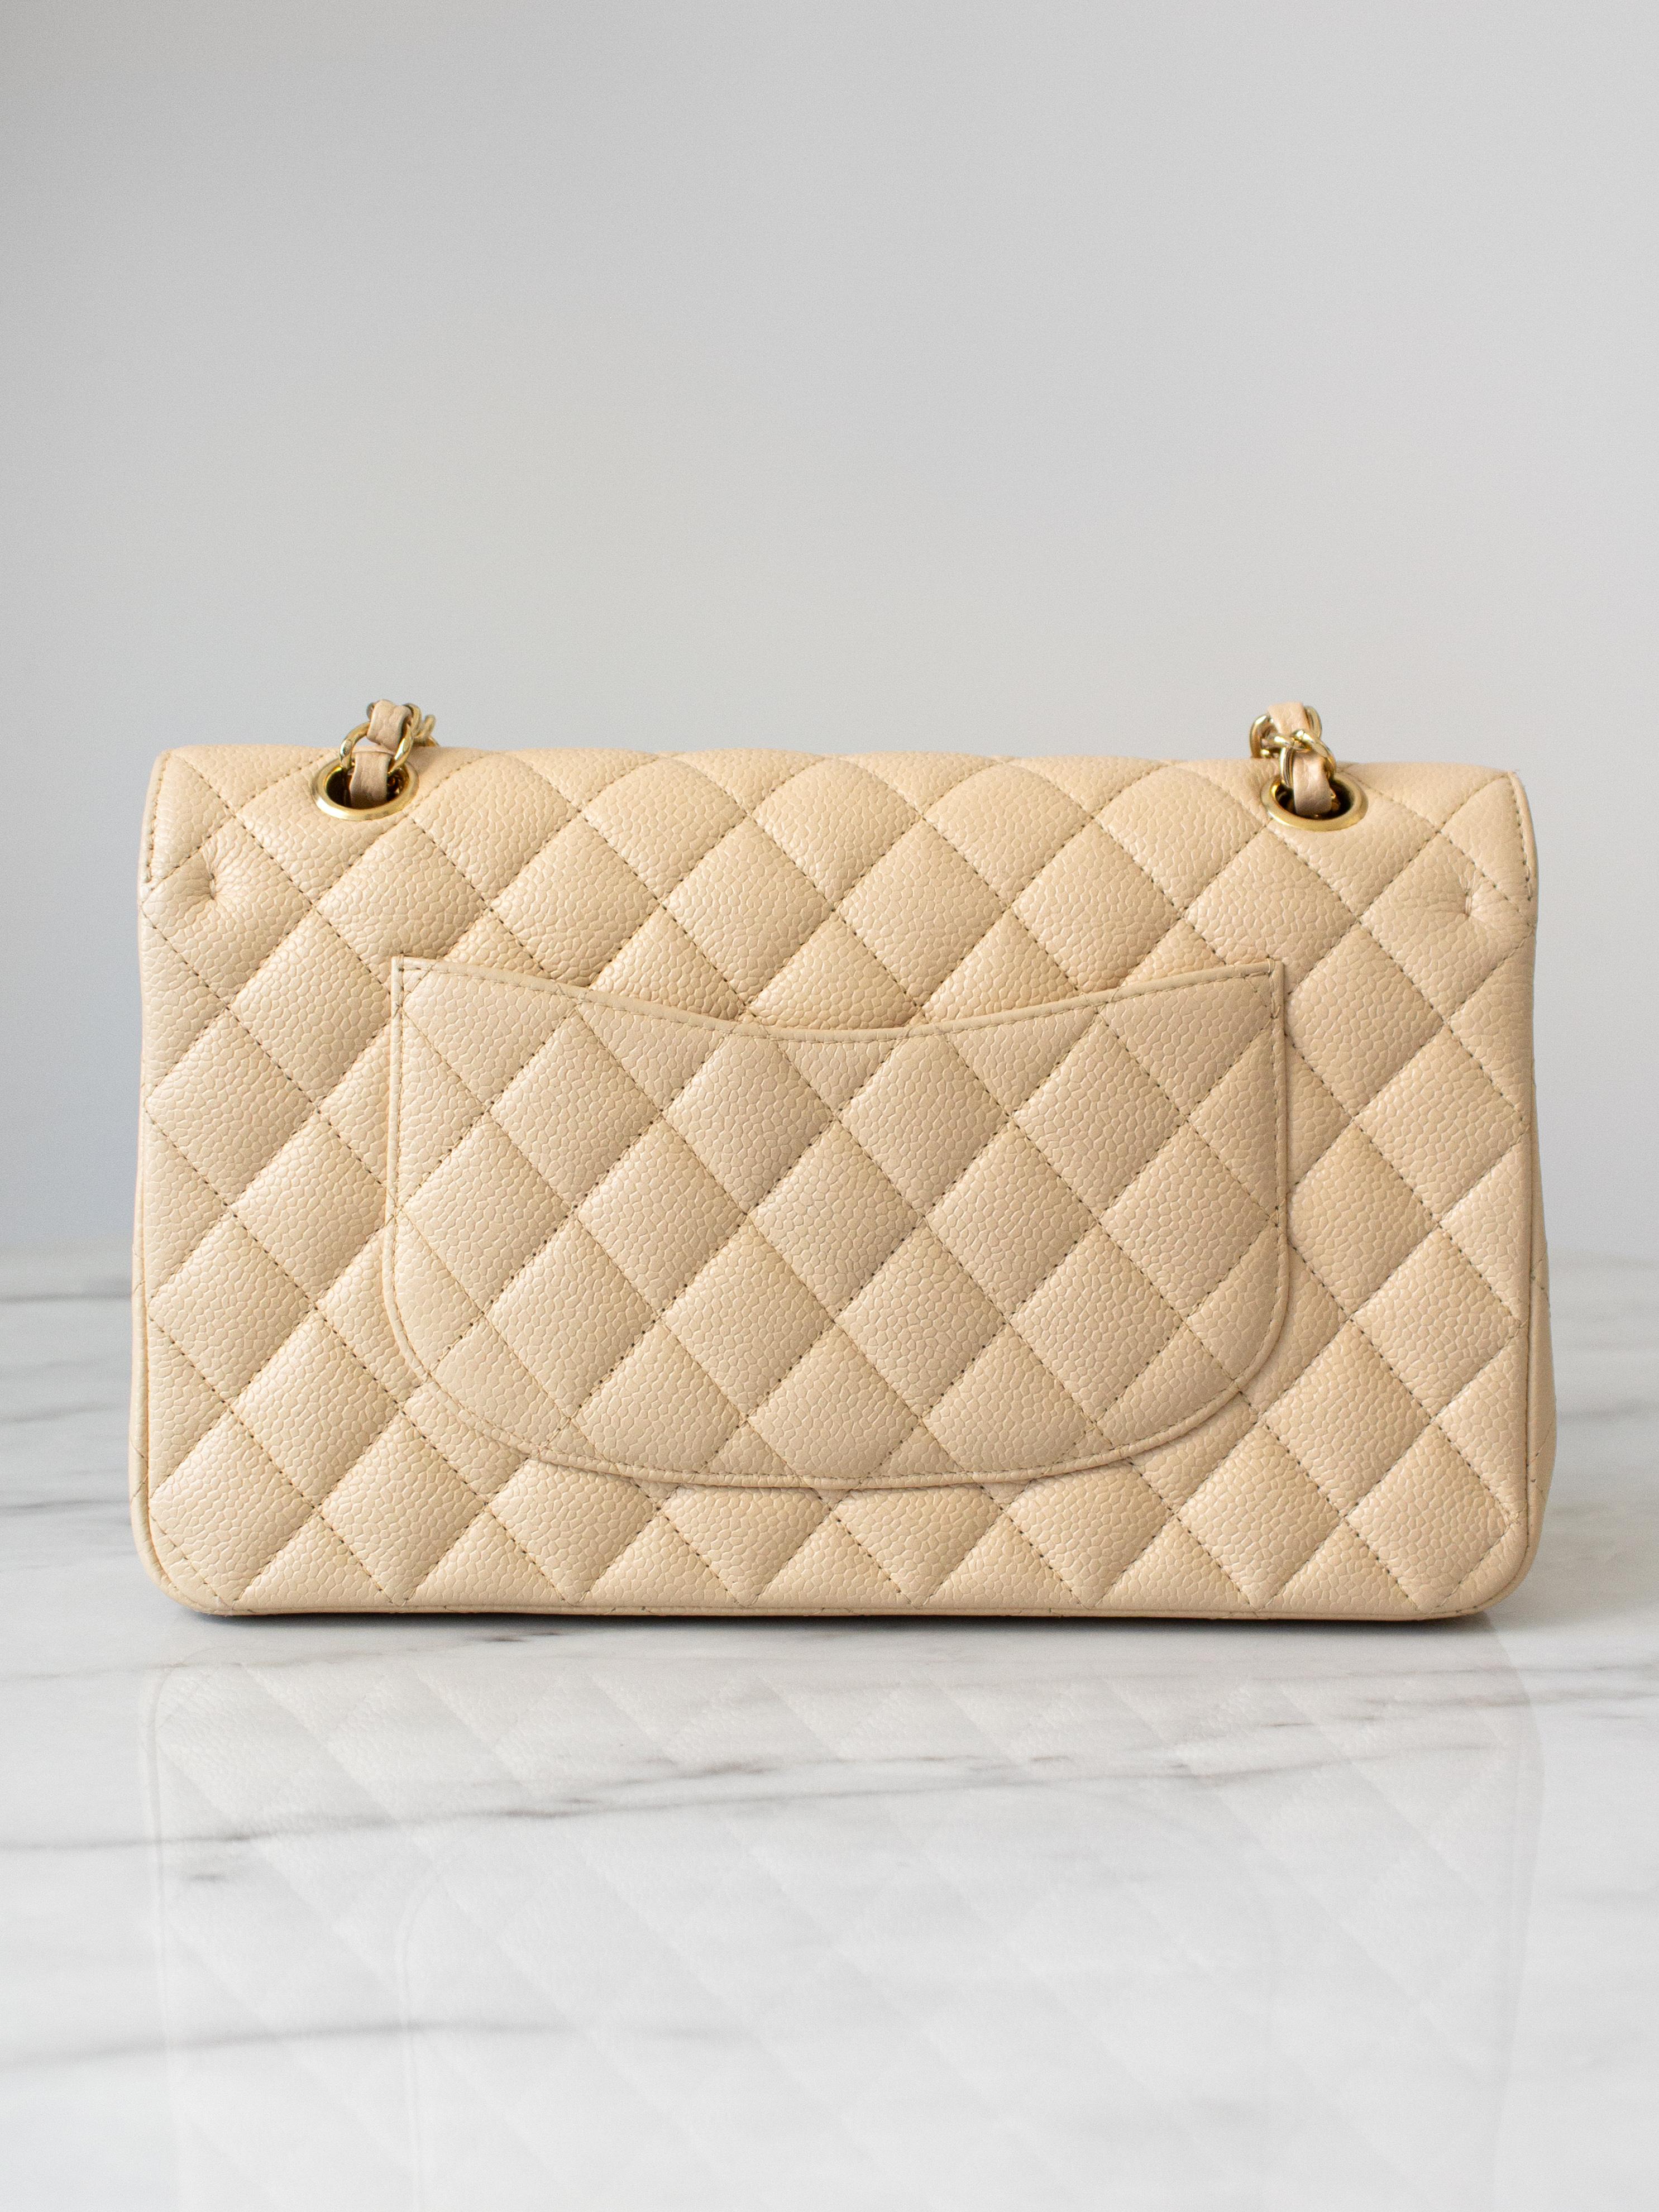 Chanel Medium Classic Double Flap Beige Clair Caviar Leather Gold GHW 2010 Bag Pour femmes en vente